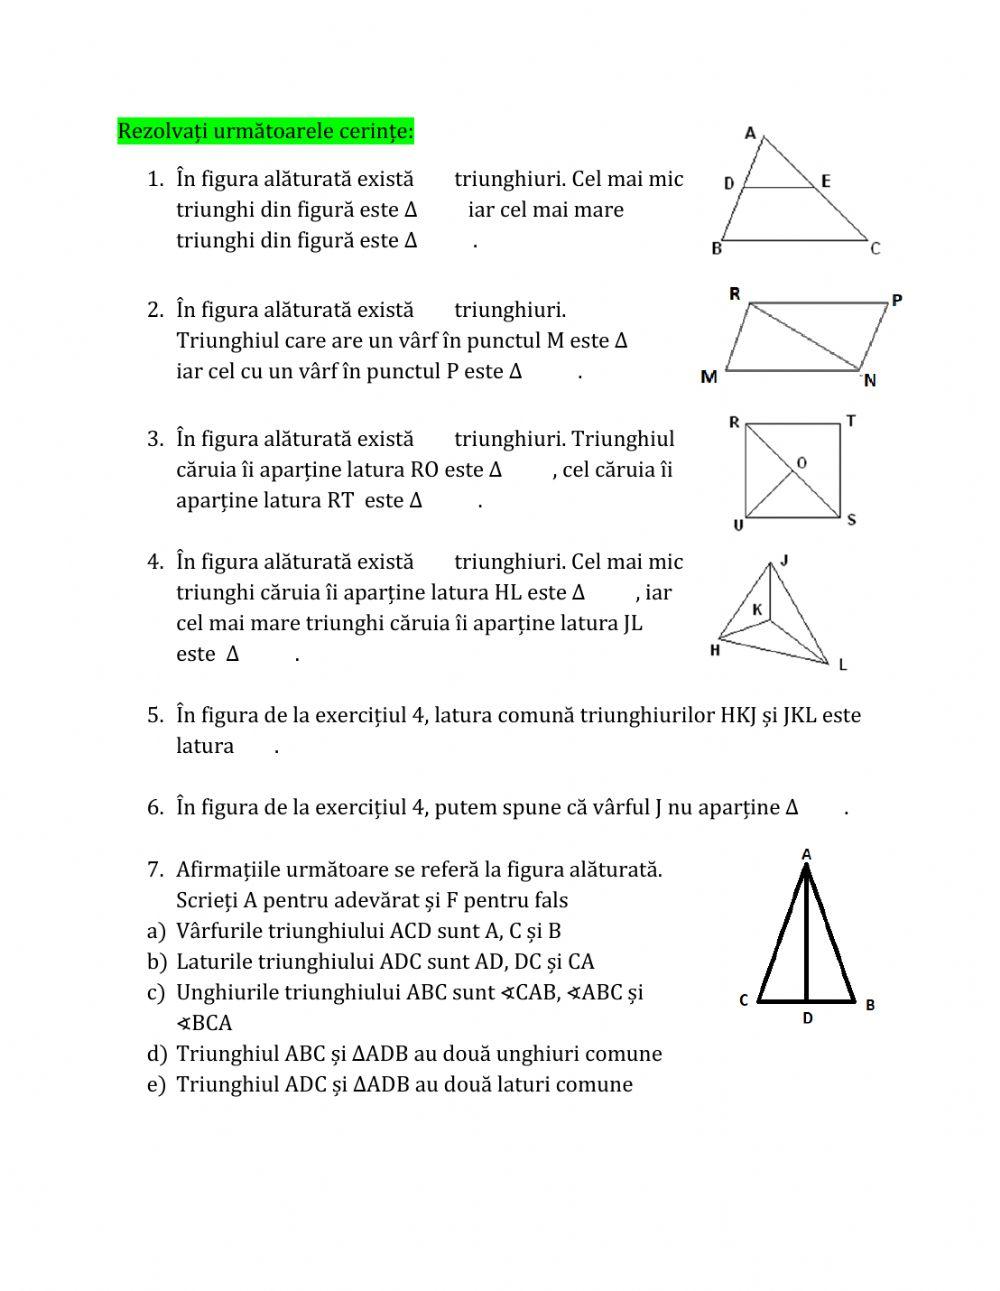 Triunghiul - definiție, elemente